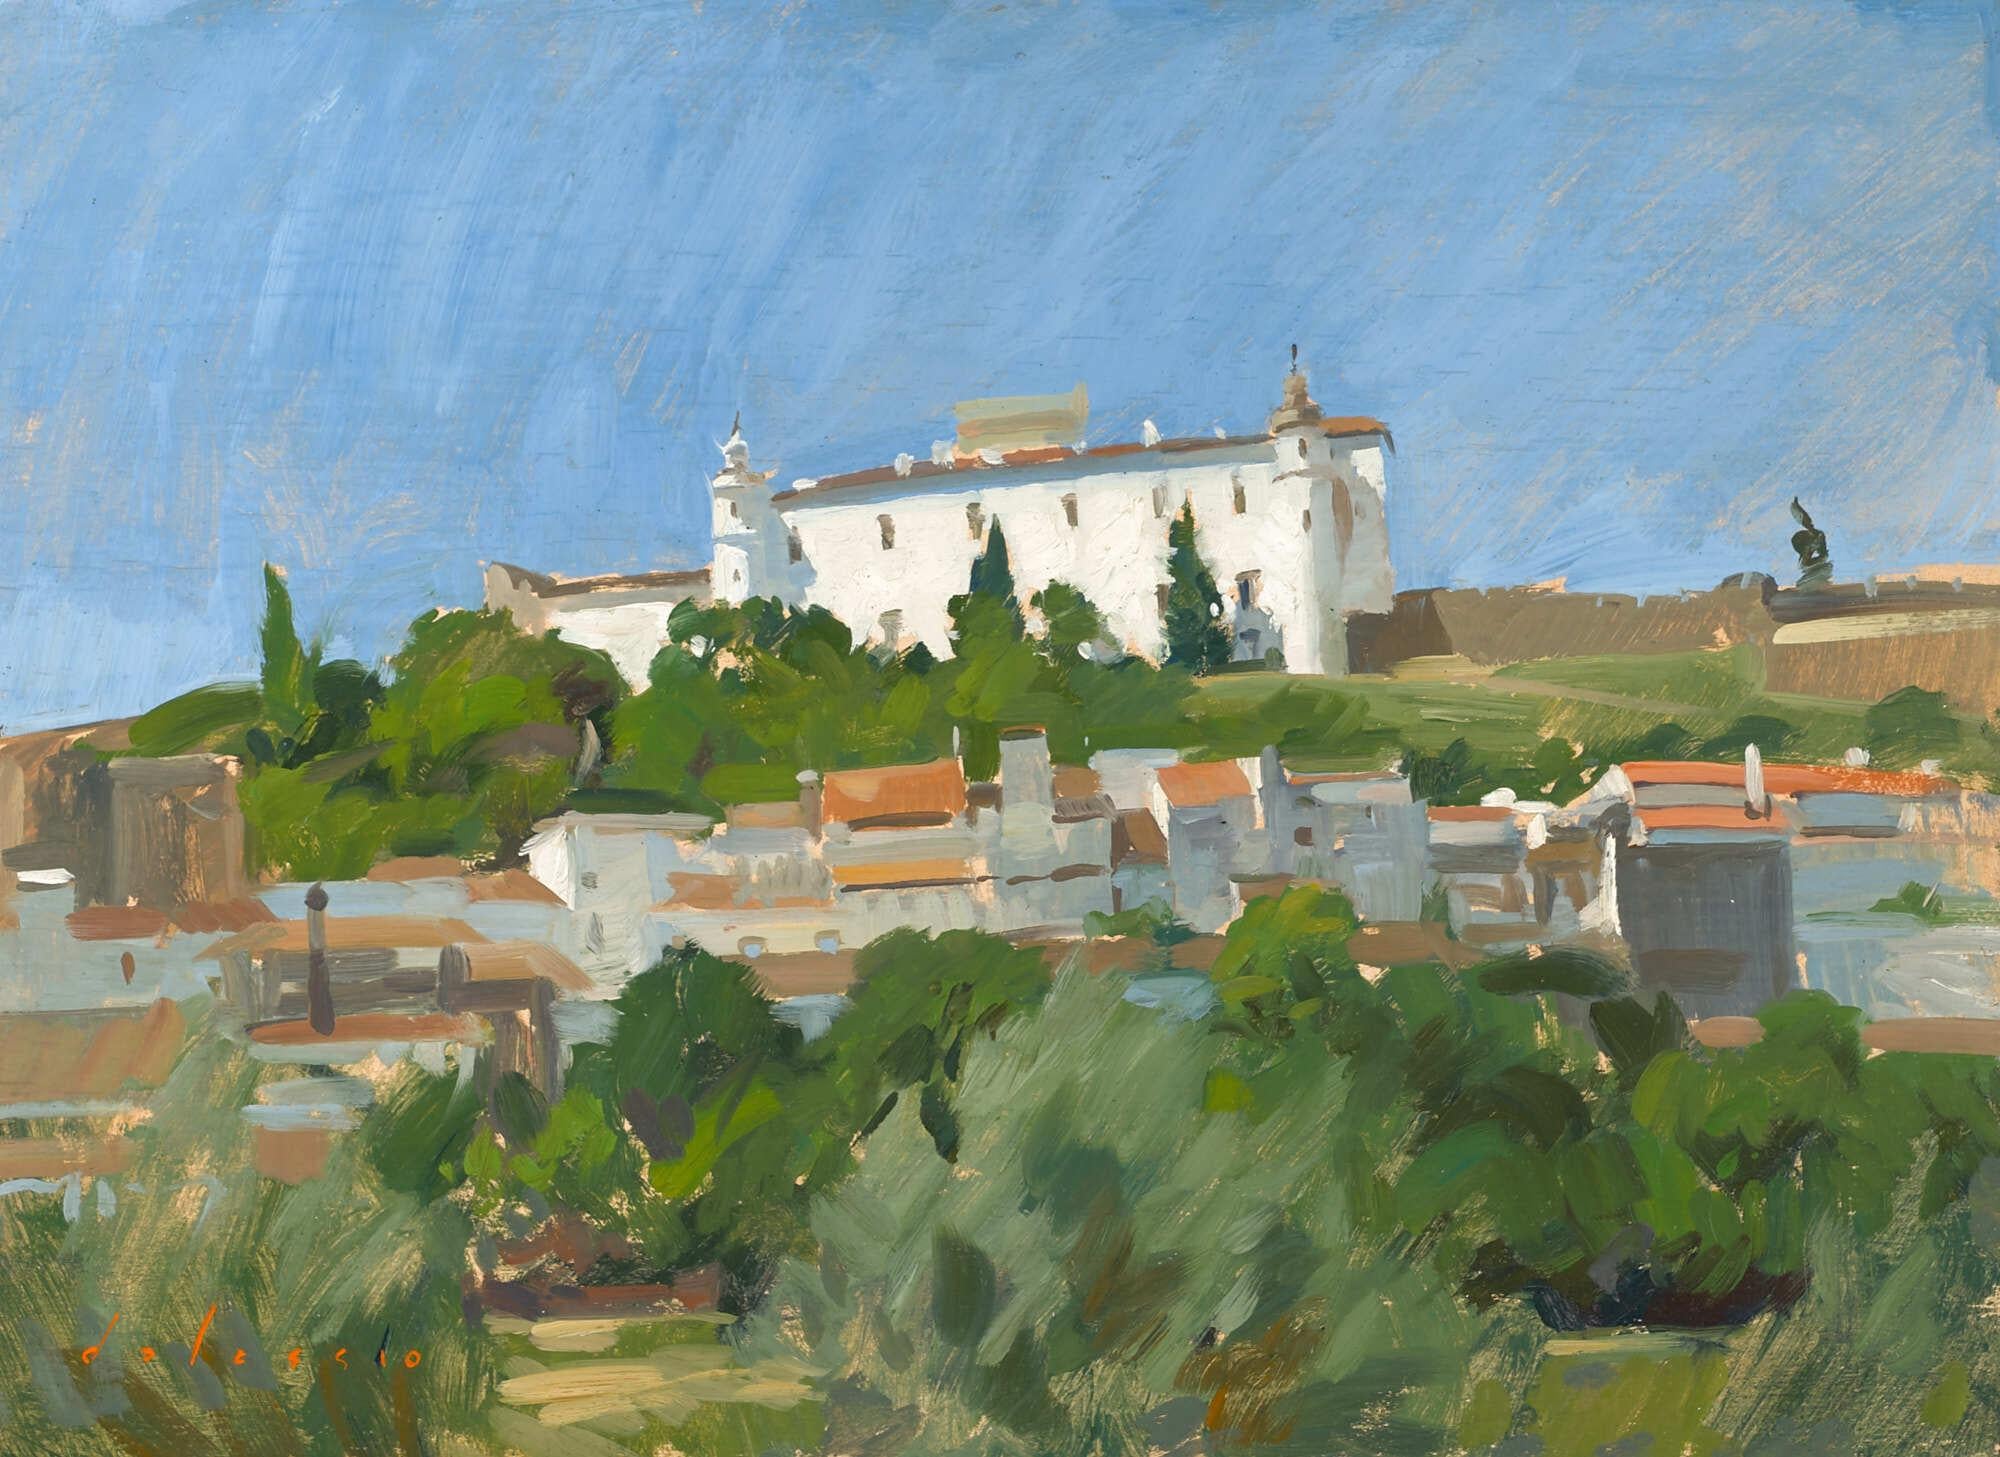 Landscape Painting Marc Dalessio - « Stremoz Castle, Summer », peinture à l'huile en plein air lumineuse d'un paysage au Portugal